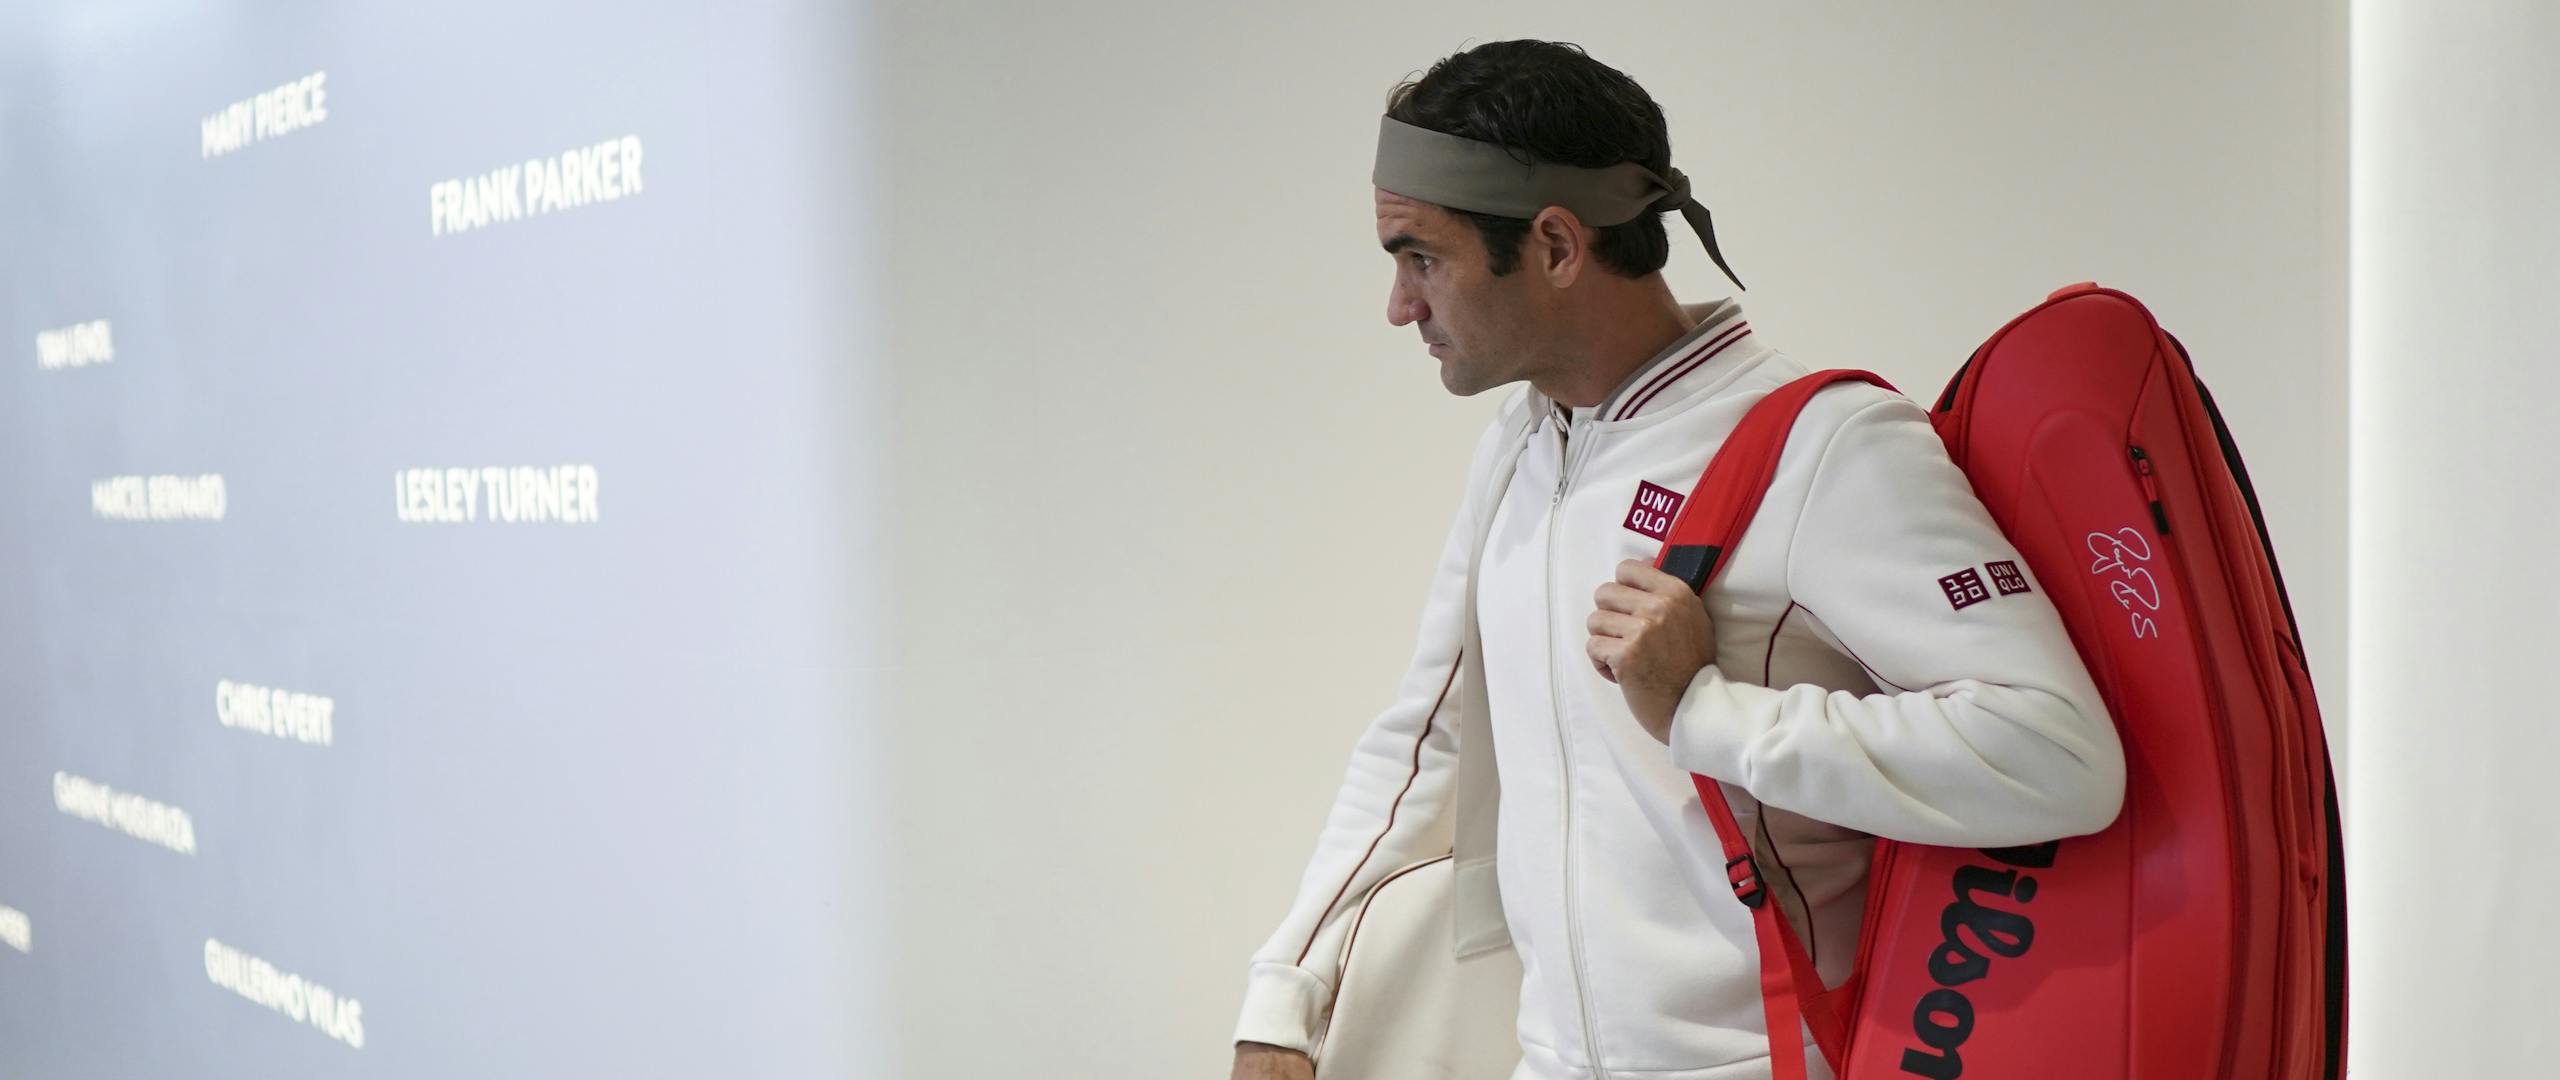 Roger Federer / Roland-Garros 2019